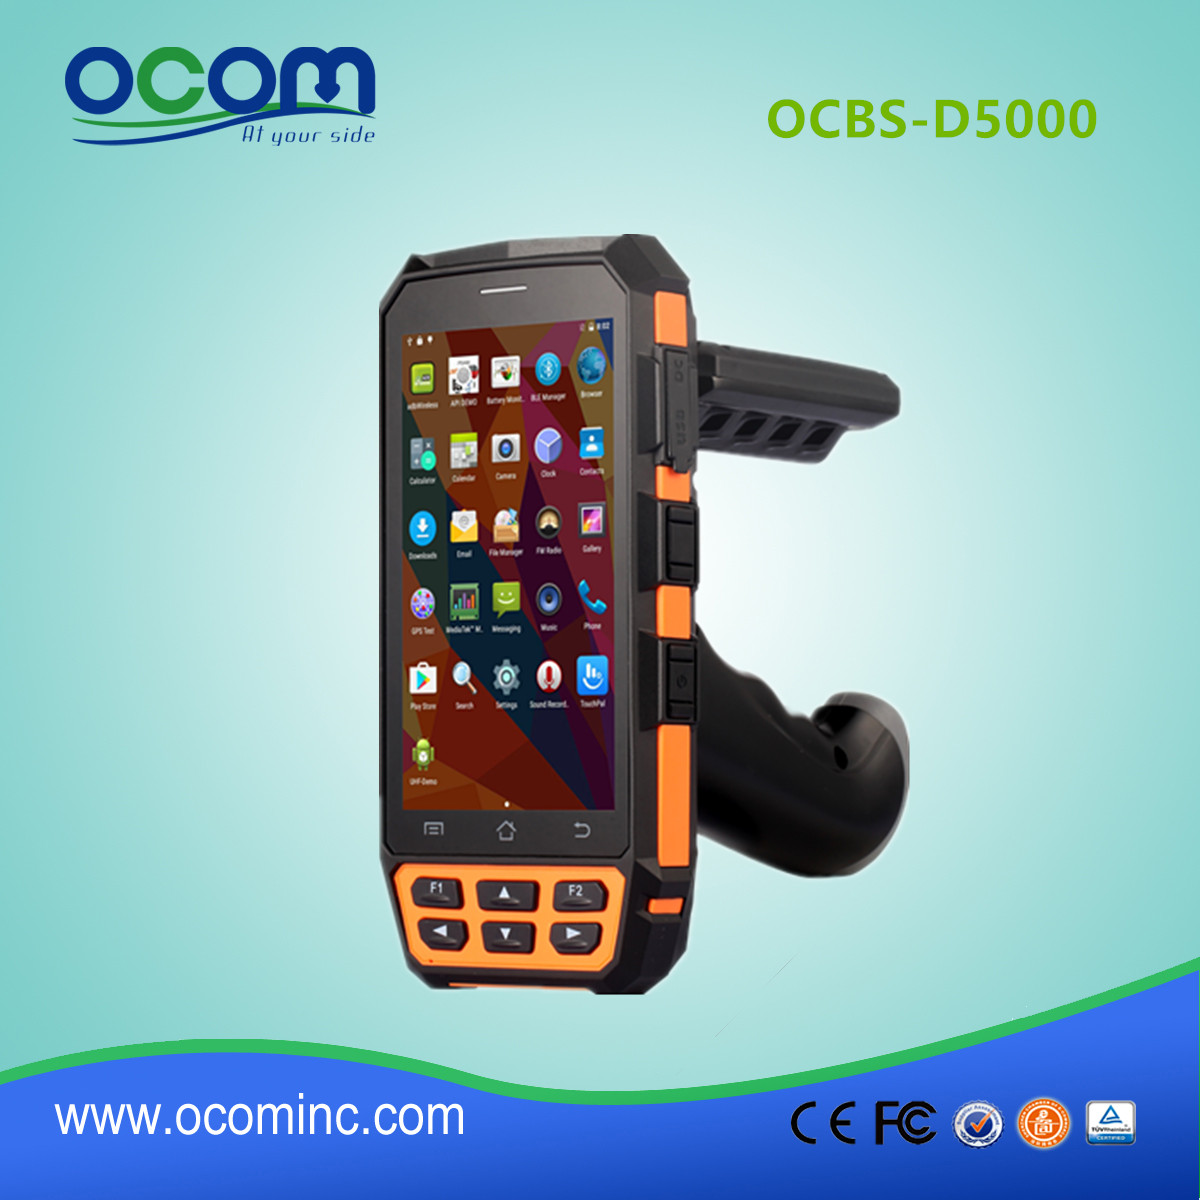 OCBS -D5000带手枪式握把和qr码扫描仪可选的快递用安卓 pda